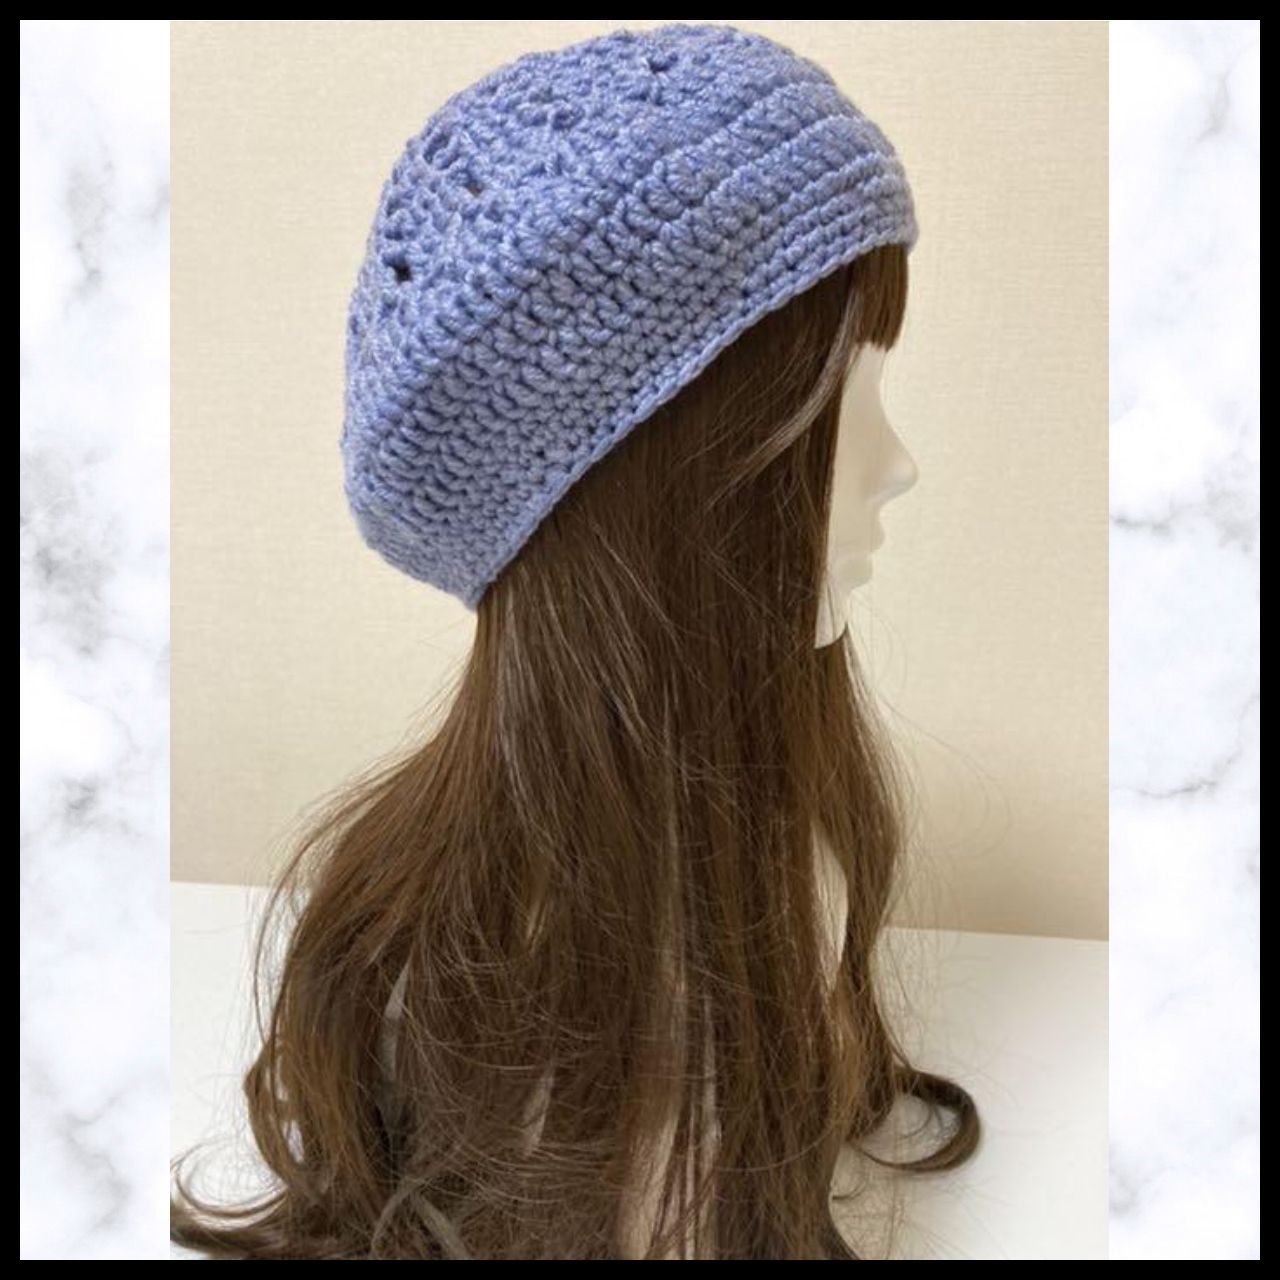 11 ニット帽 ブルー 手編み ベレー帽 お花の模様 1年中着用できる 通気